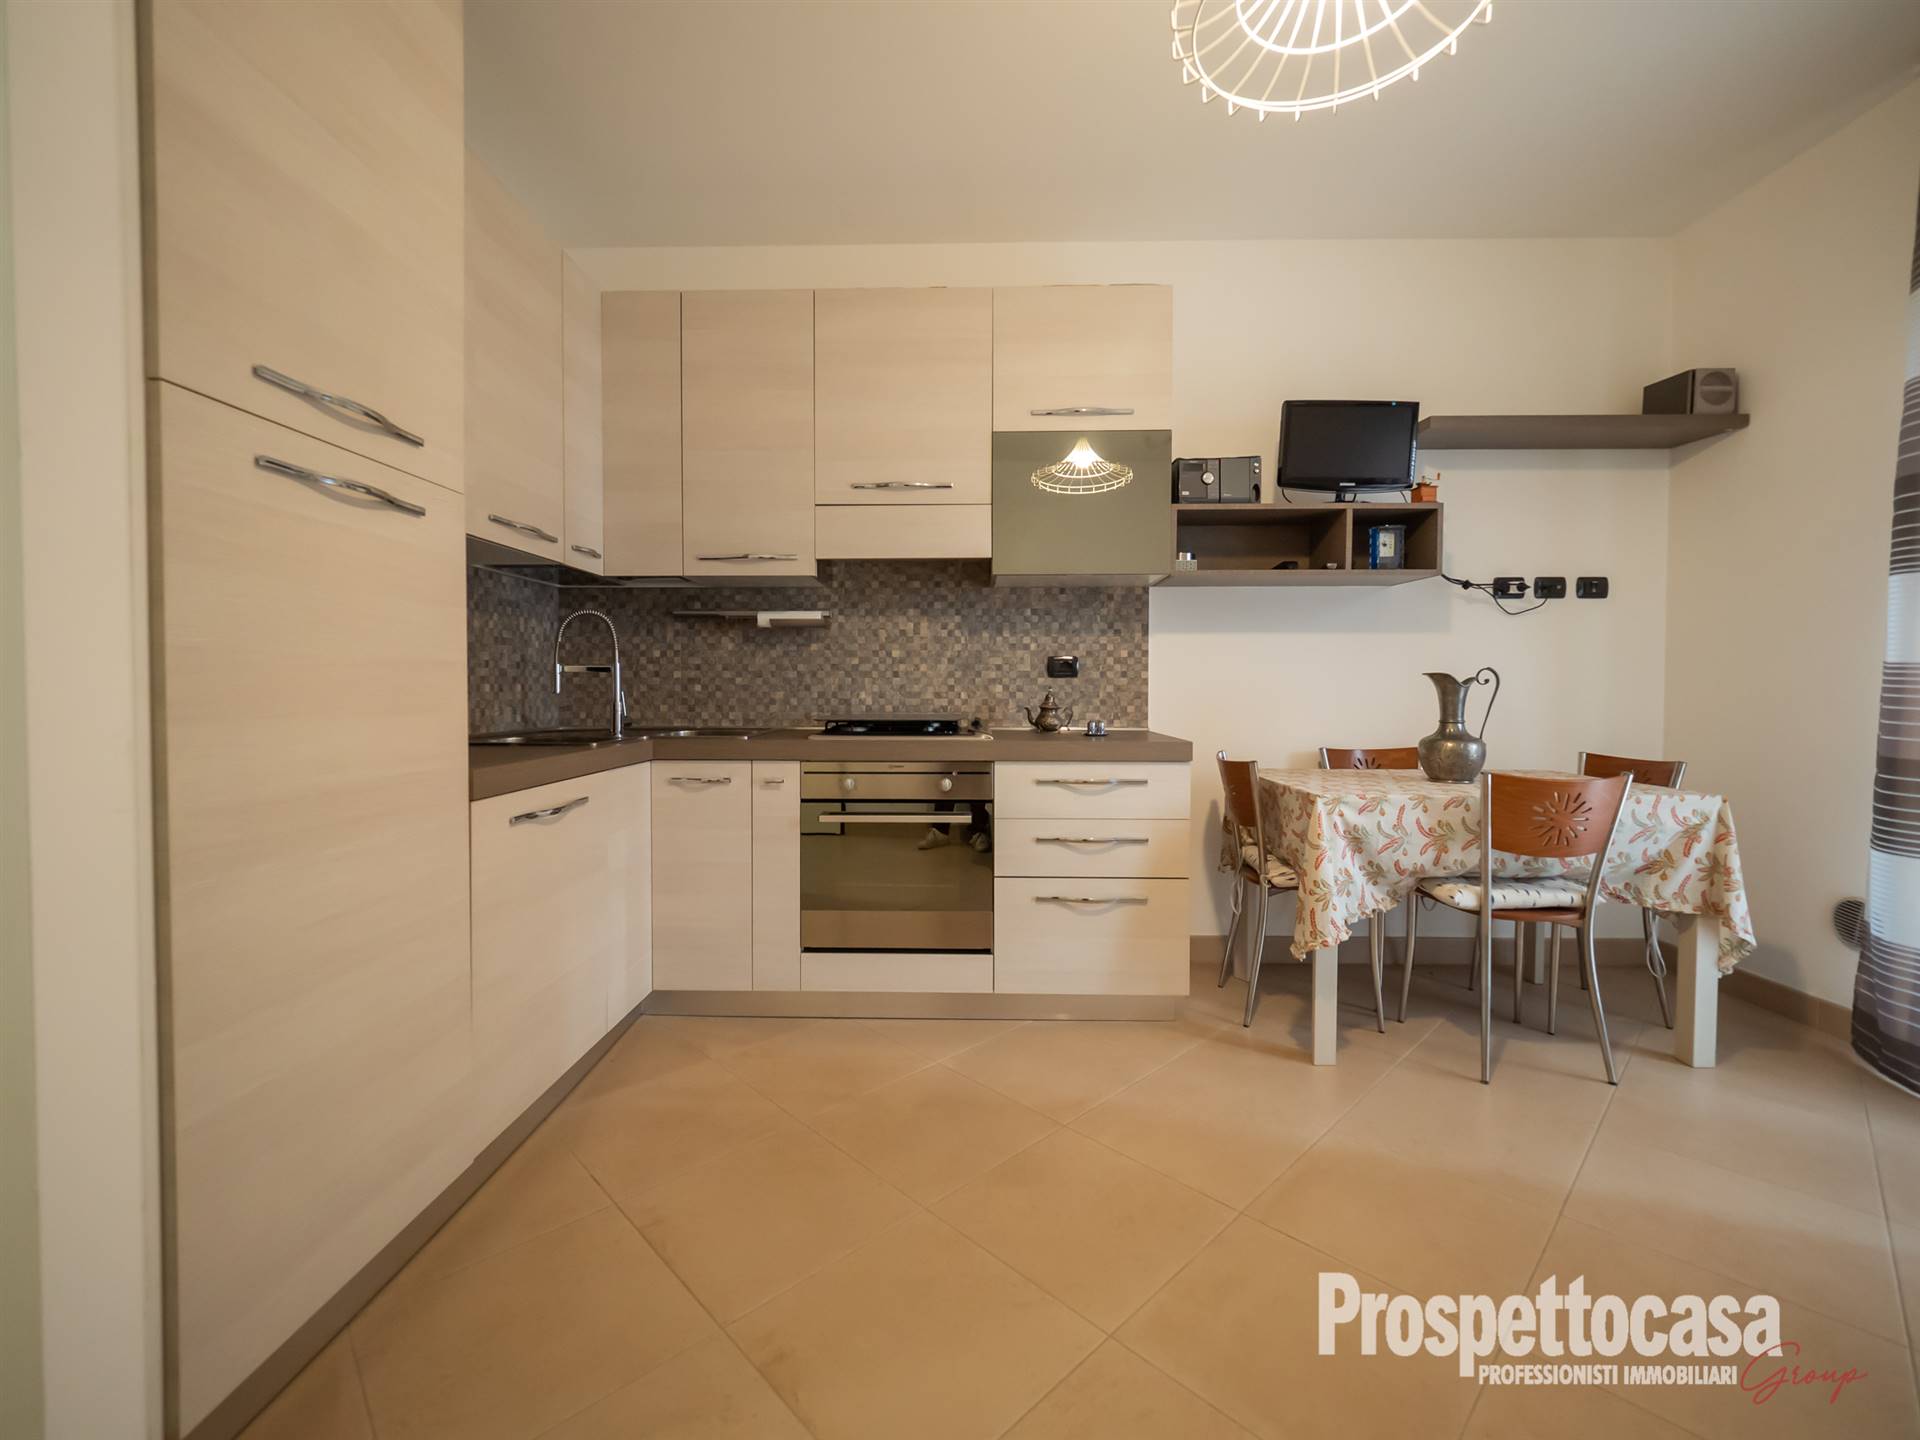 Appartamento in vendita a Trezzano sul Naviglio, 2 locali, prezzo € 179.000 | PortaleAgenzieImmobiliari.it